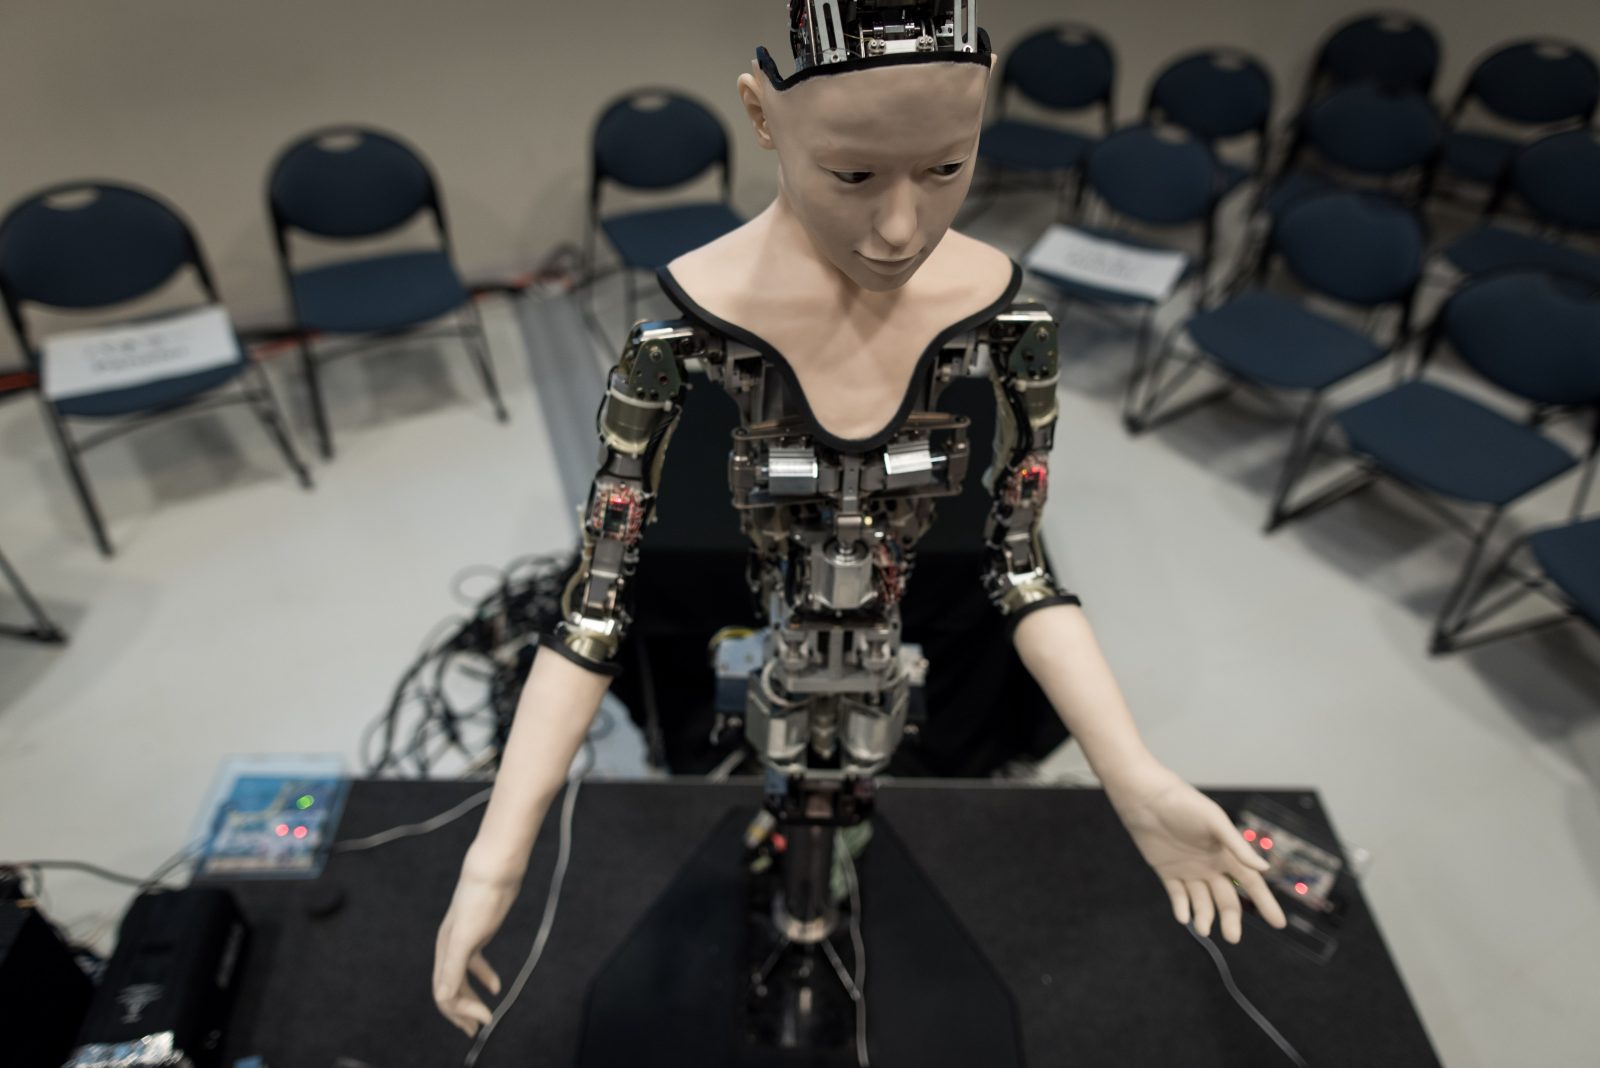 Izložba o humanoidu Alteru predstavljena u Nacionalnom muzeju nauke u Tokiju, u Japanu, danas je zatvorena. Robot Alter ima niz senzora i elektronskih signala sličnih neuronskoj mreži u ljudskom mozgu zbog čega može imitirati pojedine ljudske pokrete. ( Nicolas Datiche - Anadolu Agency )